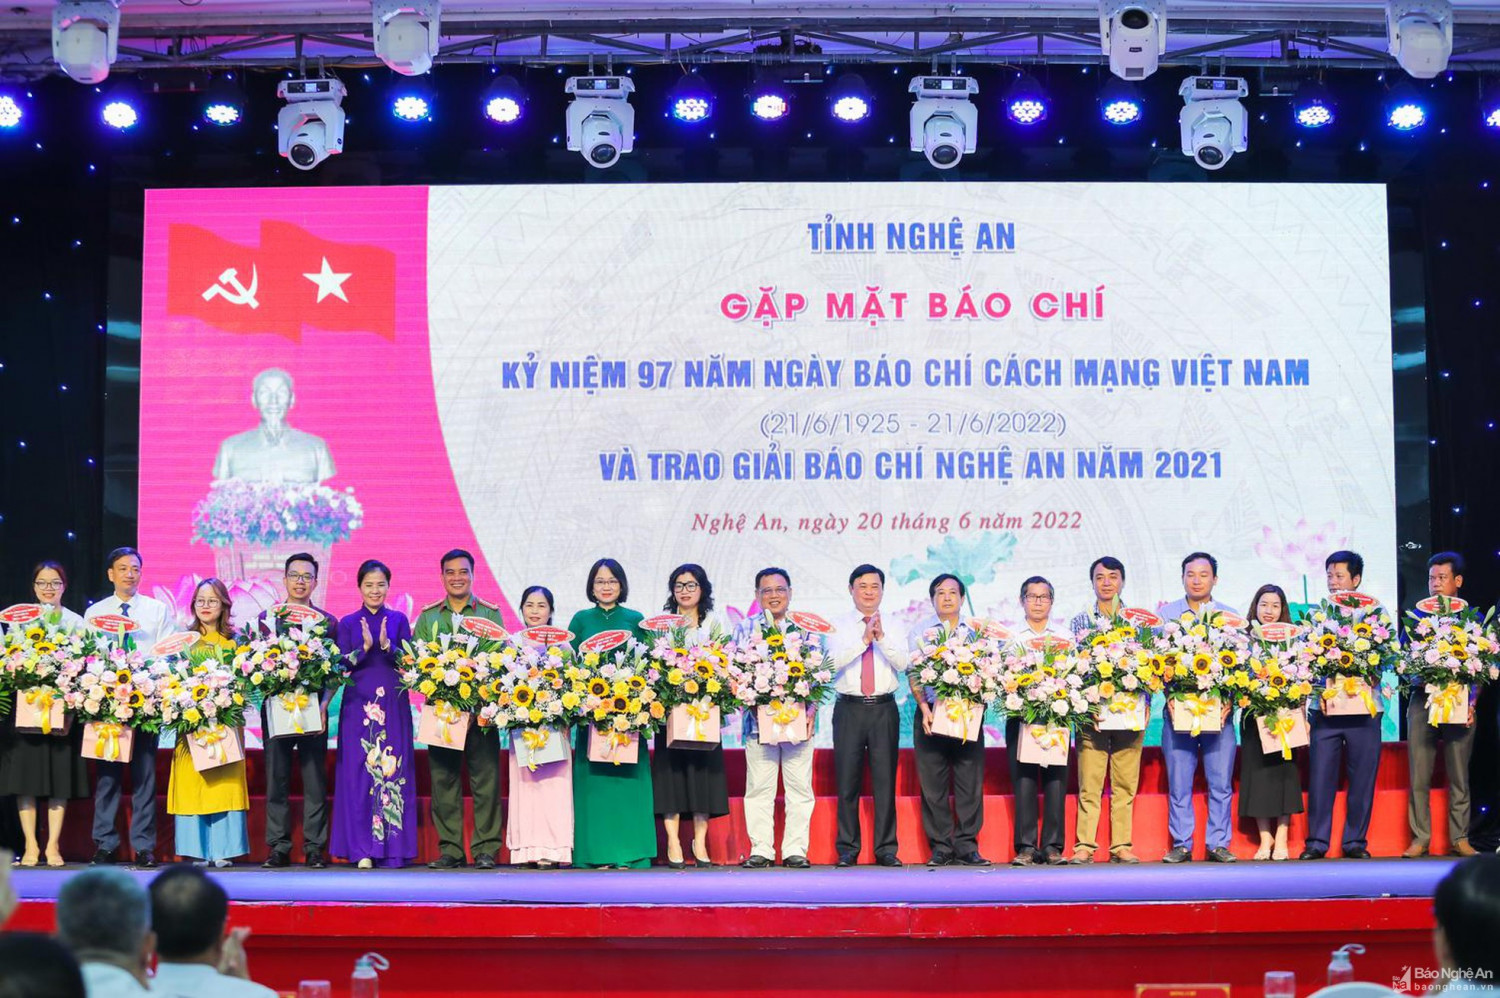 Nghệ An: Gặp mặt nhân kỷ niệm 97 năm ngày Báo chí Cách mạng Việt Nam và trao giải Báo chí năm 2021 ảnh 12